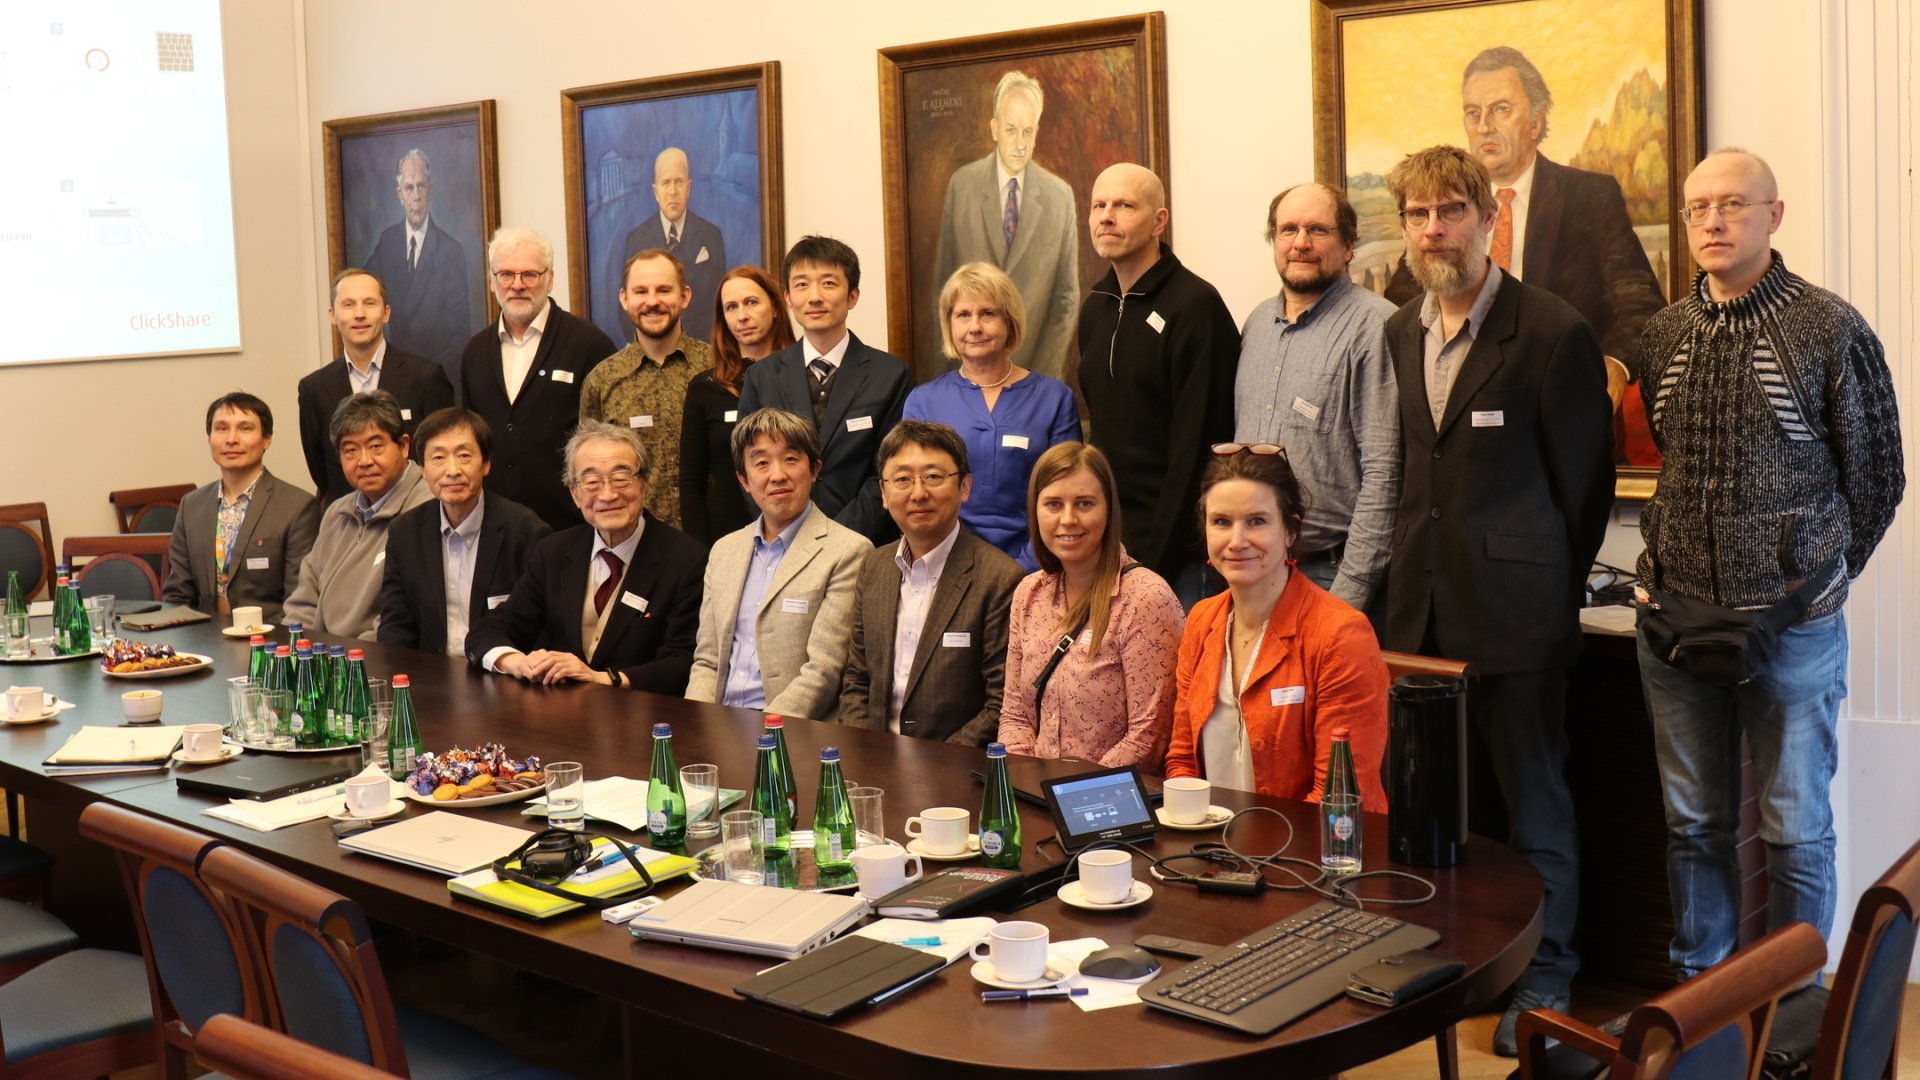 Kohtumine Jaapani loodusteaduste olümpiaadi komisjoniga Tartu Ülikooli peahoone nõukogu saalis.